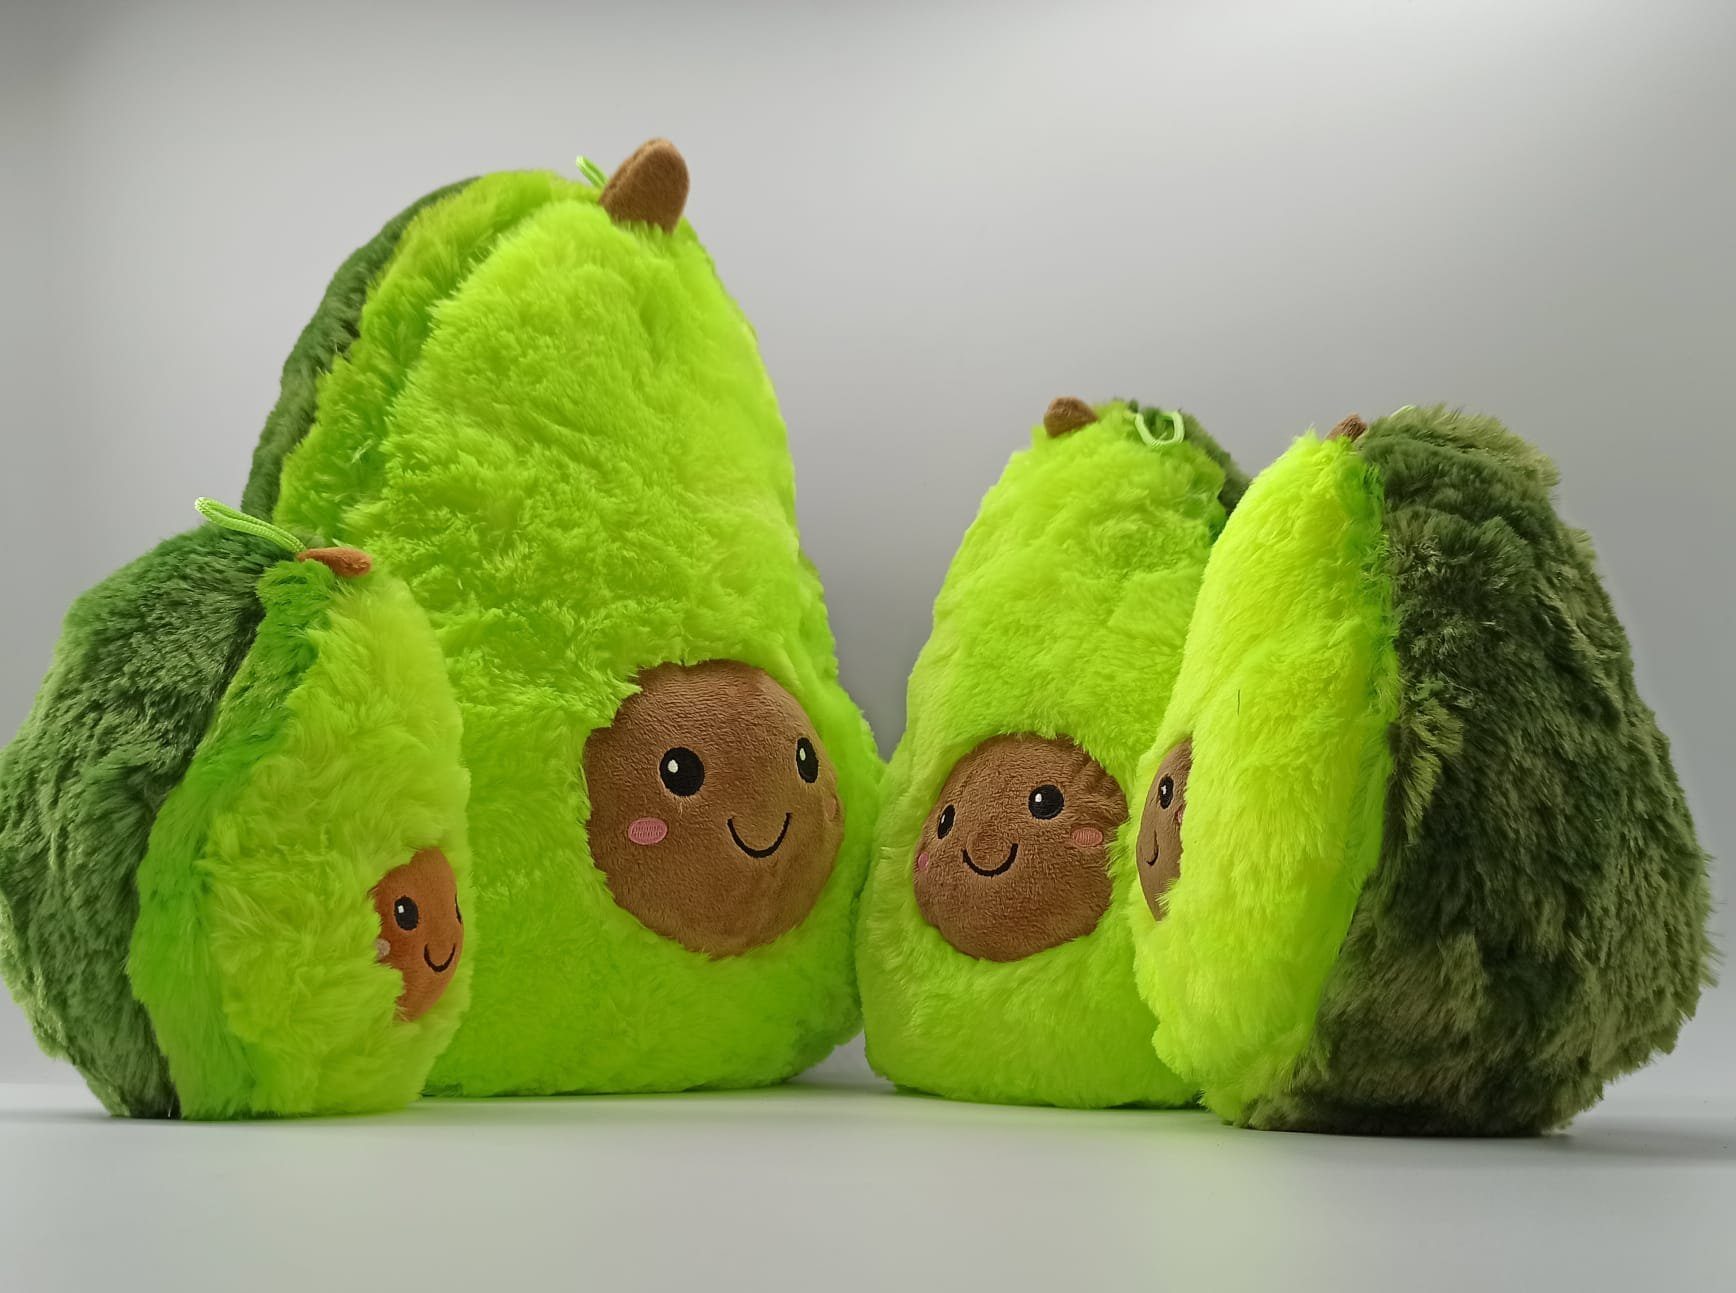 soma Kuscheltier süße Avocado 50 cm Lebensmittel Früchte grün Gesicht,  Super weicher Plüsch Stofftier Kuscheltier für Kinder zum spielen